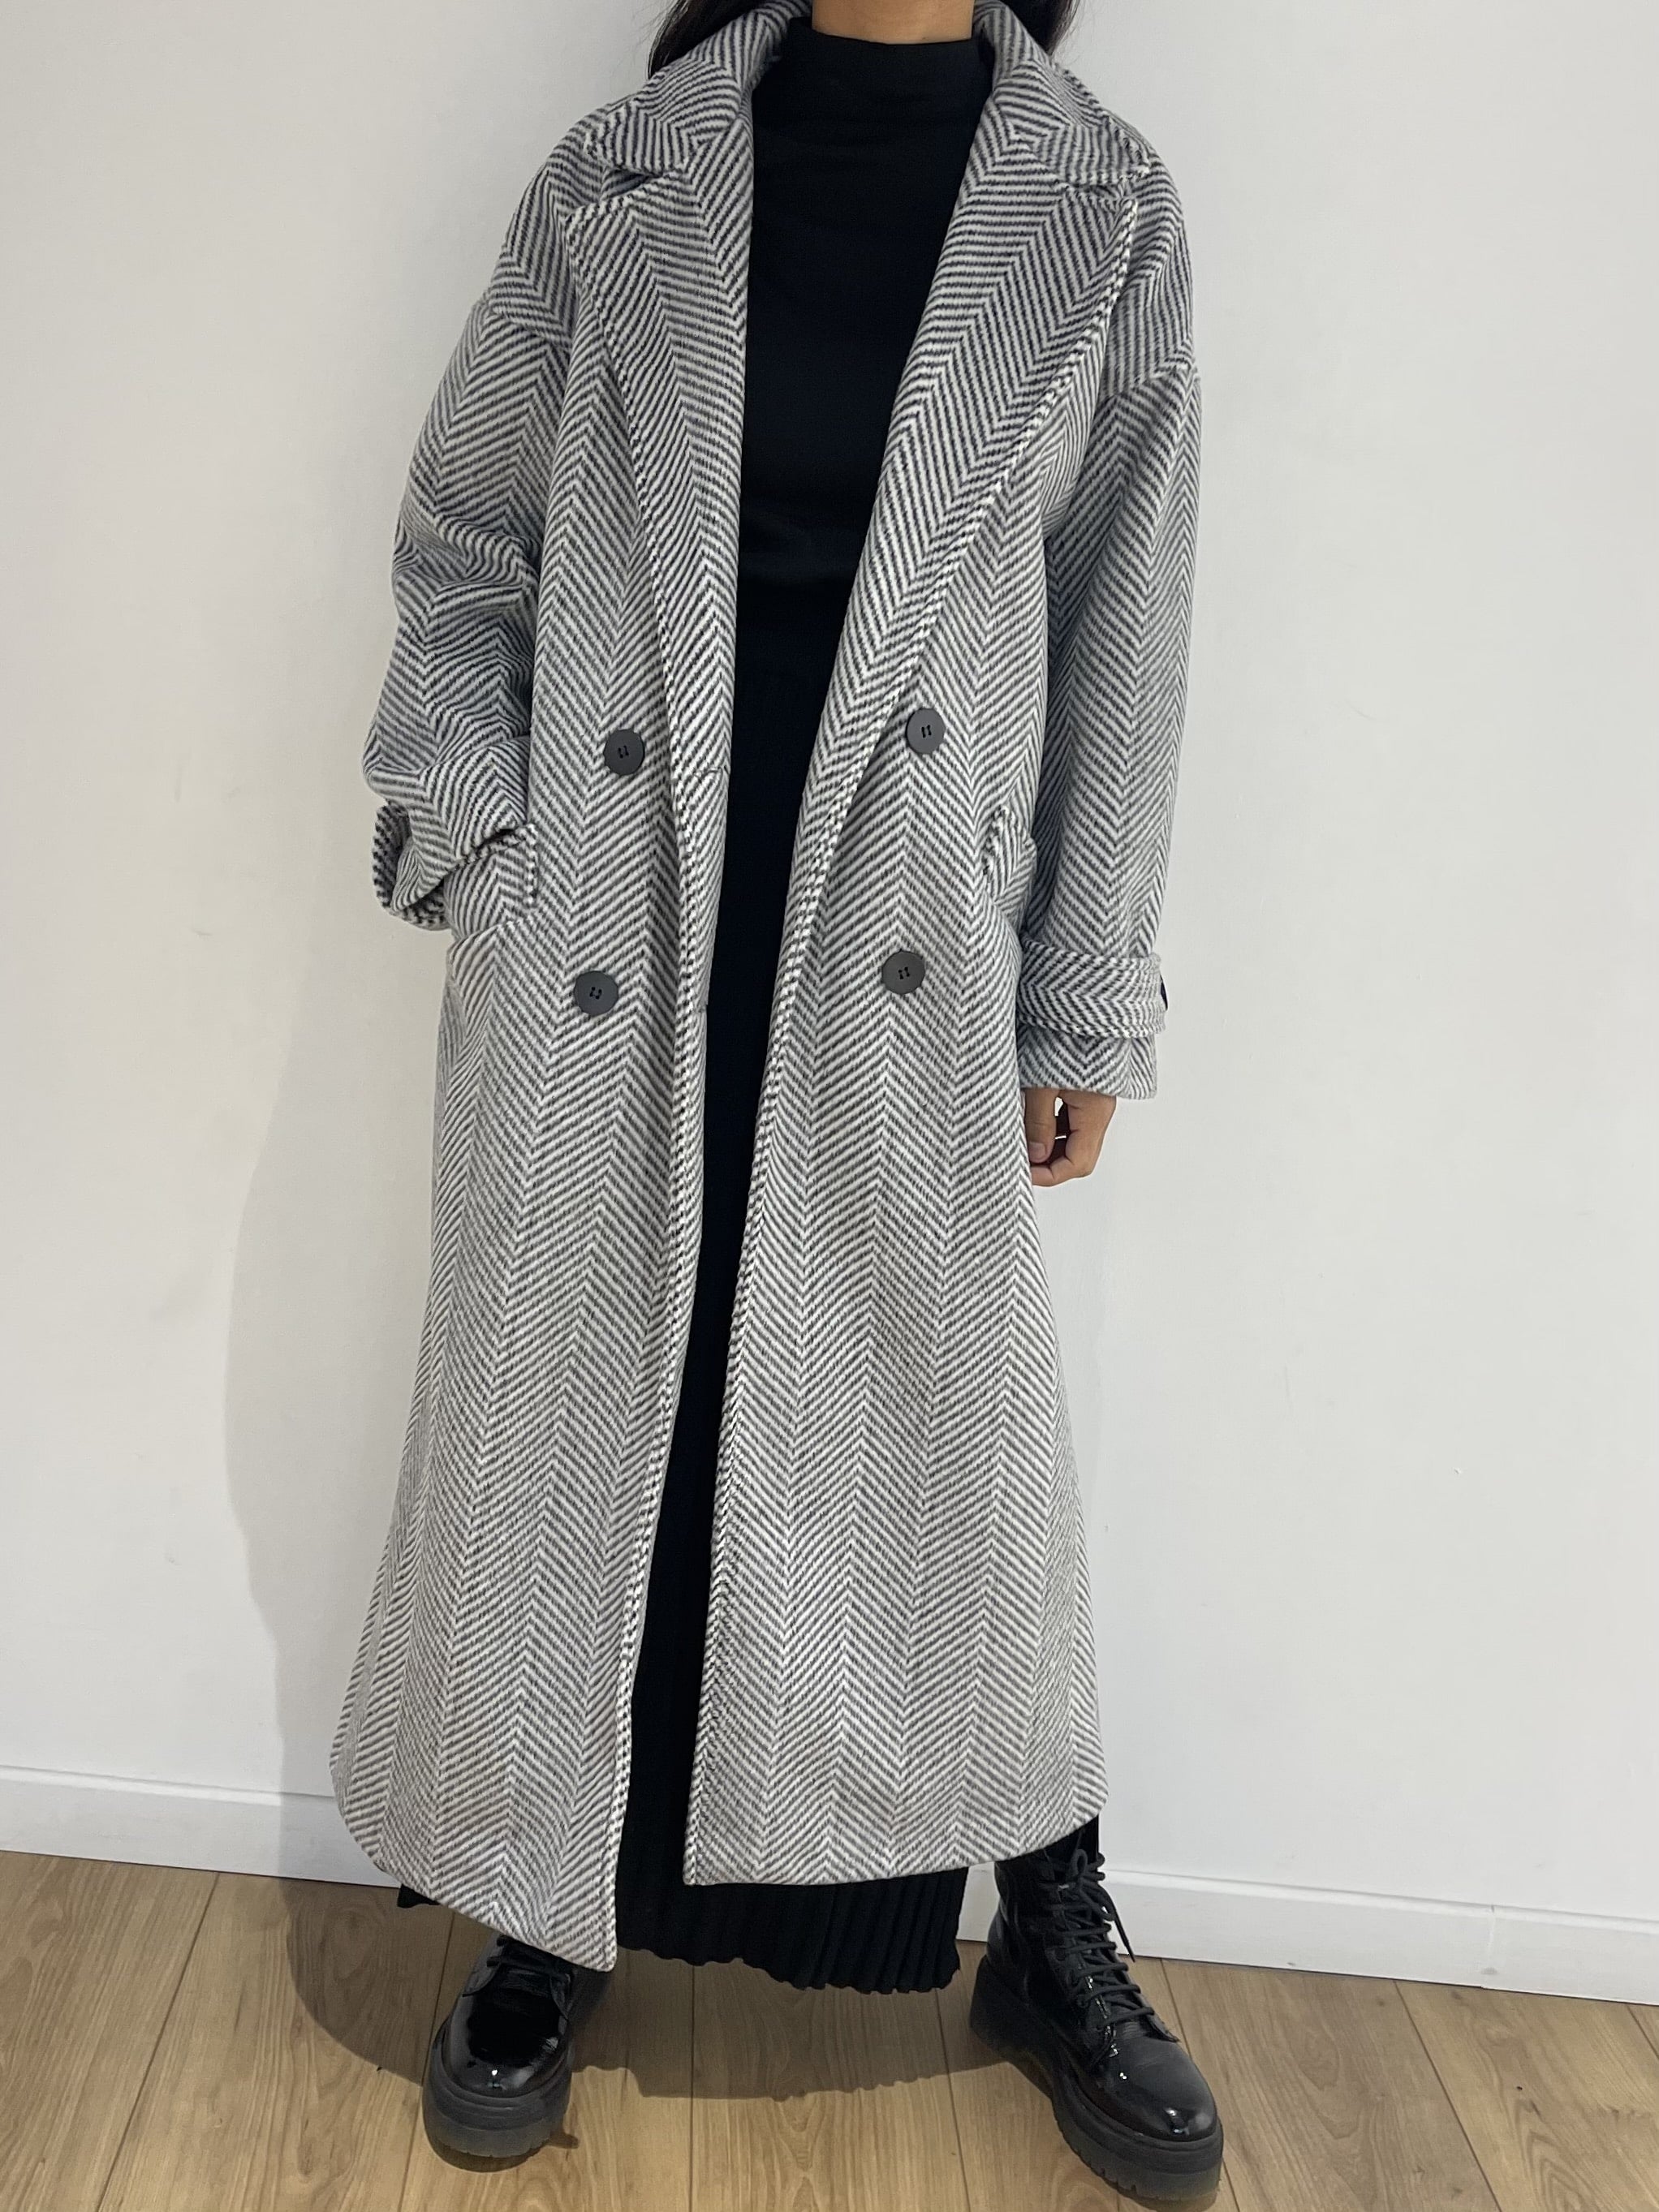 Vue de face du manteau chevron gris tendance, idéal pour une garde-robe moderne.